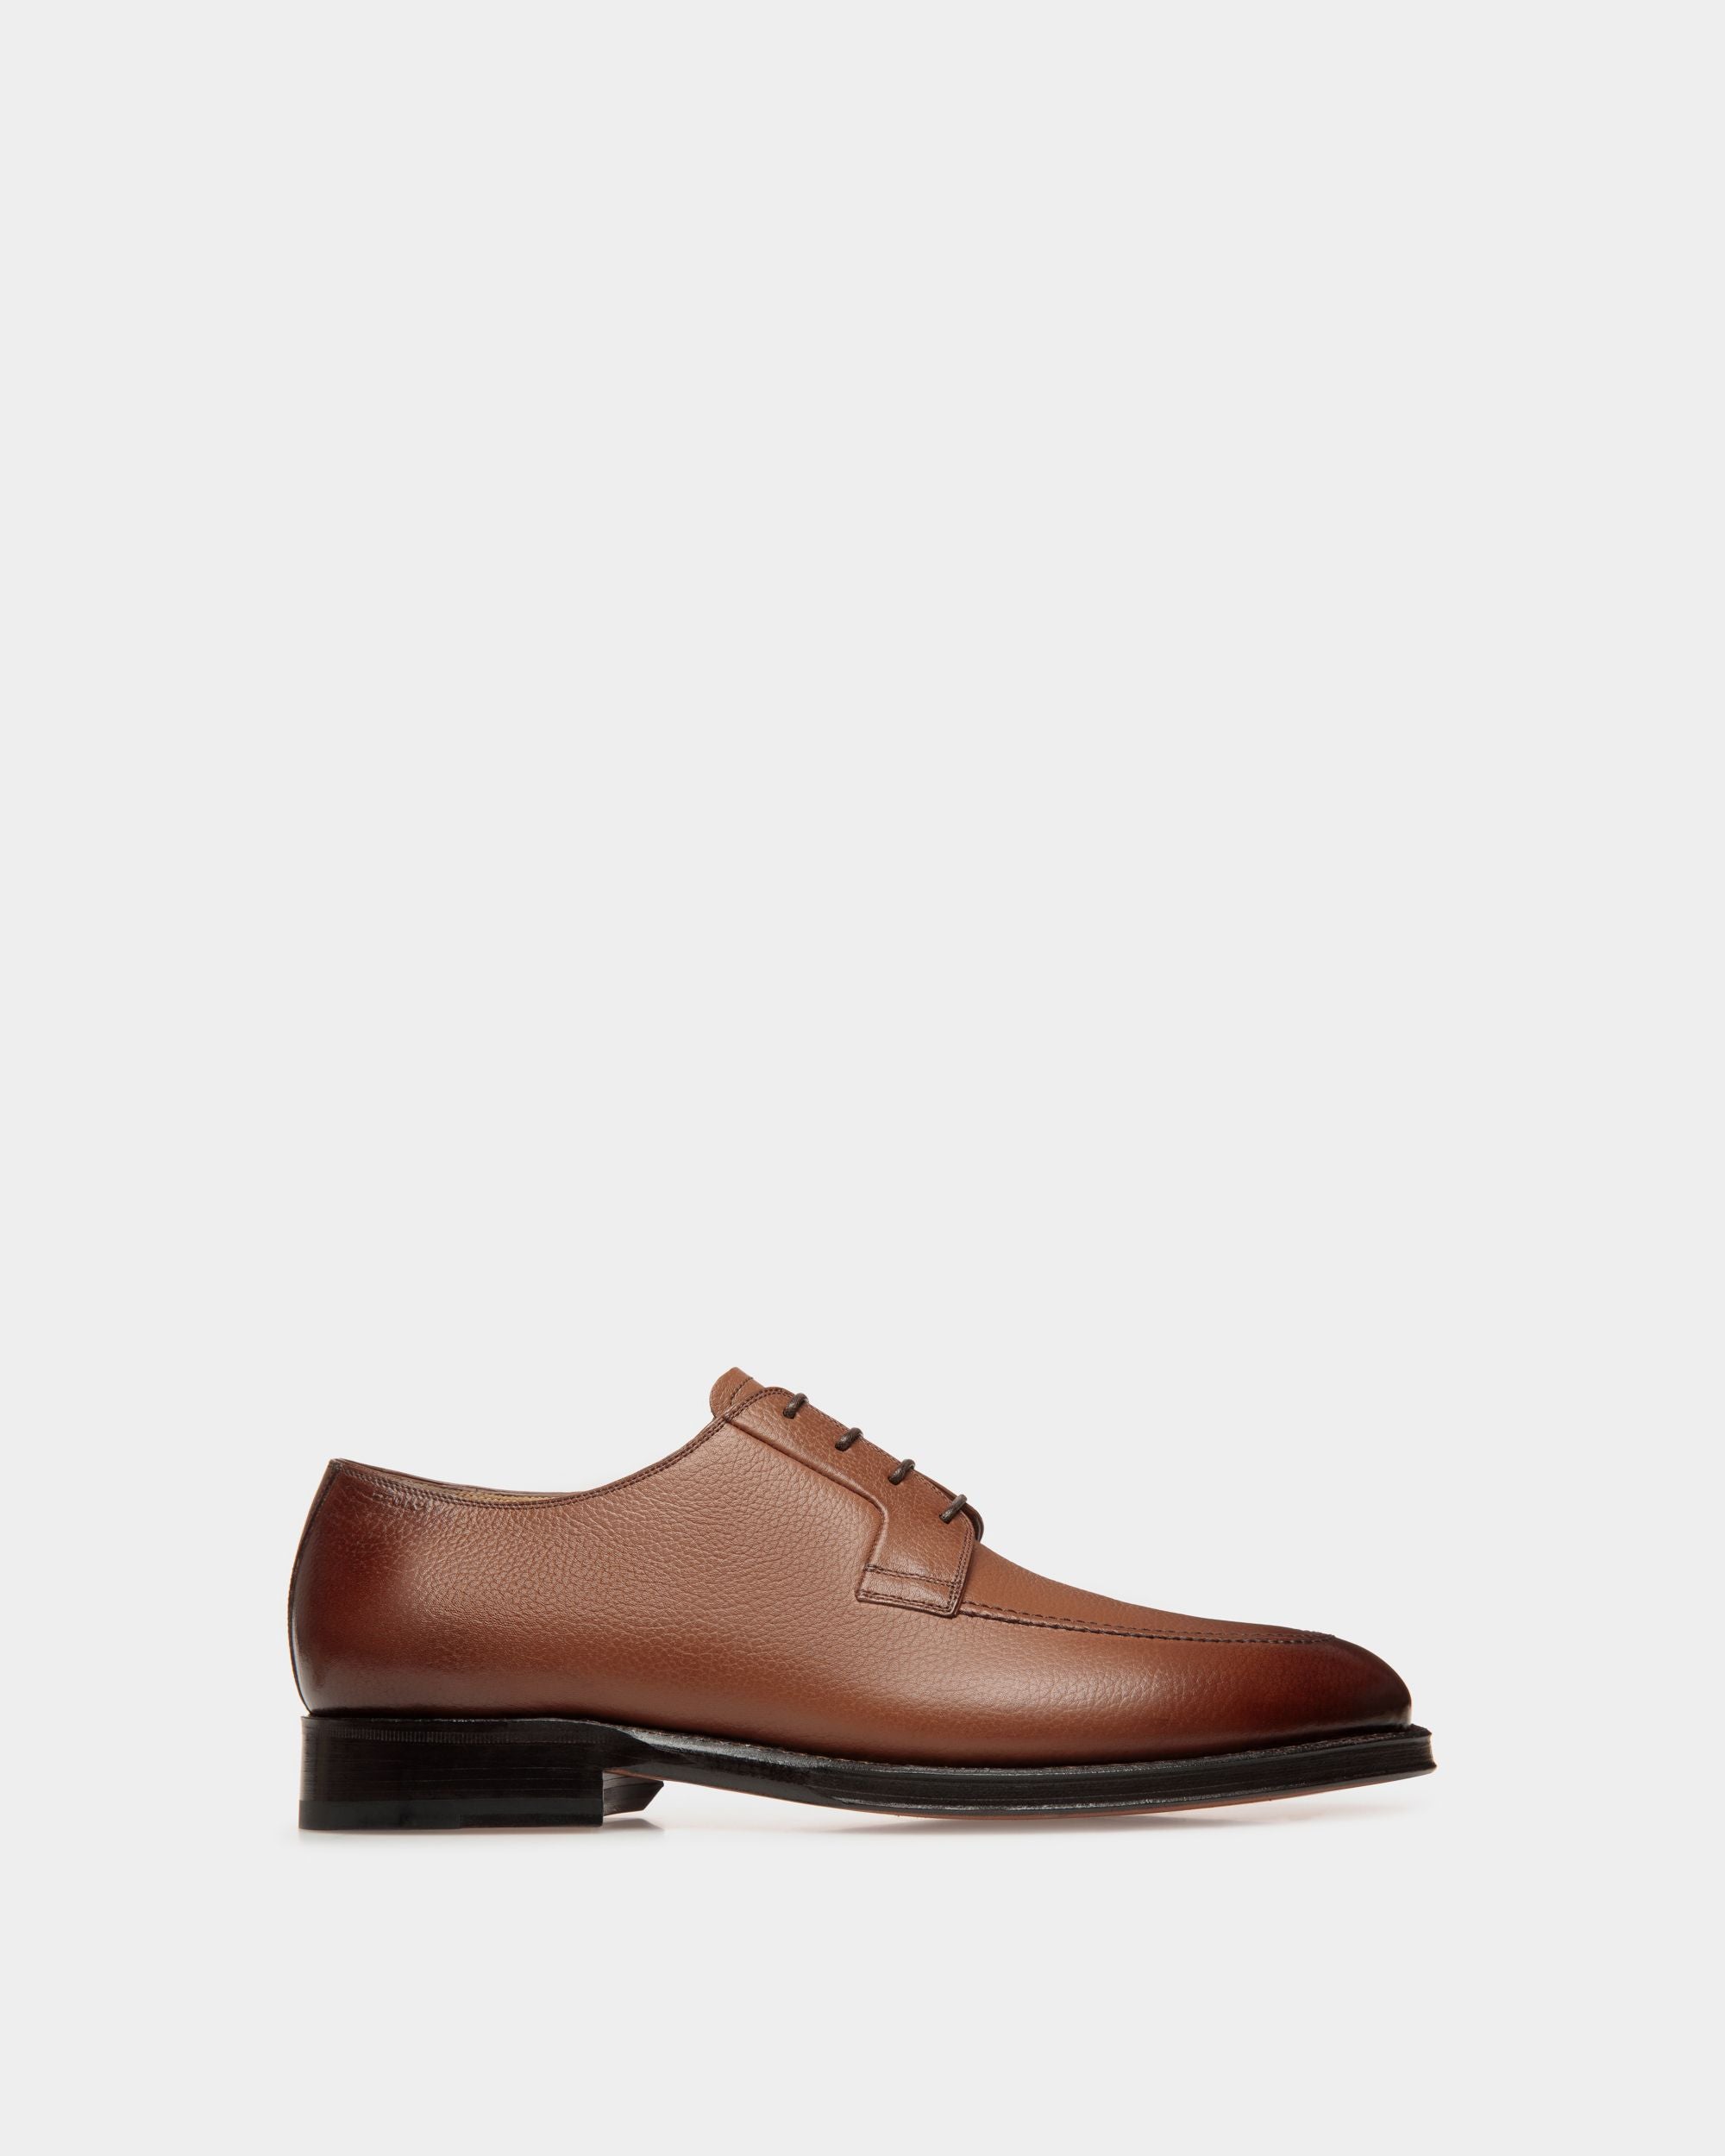 Schoenen | Derby-Schuhe für Herren aus geprägtem Leder in Braun | Bally | Still Life Seite